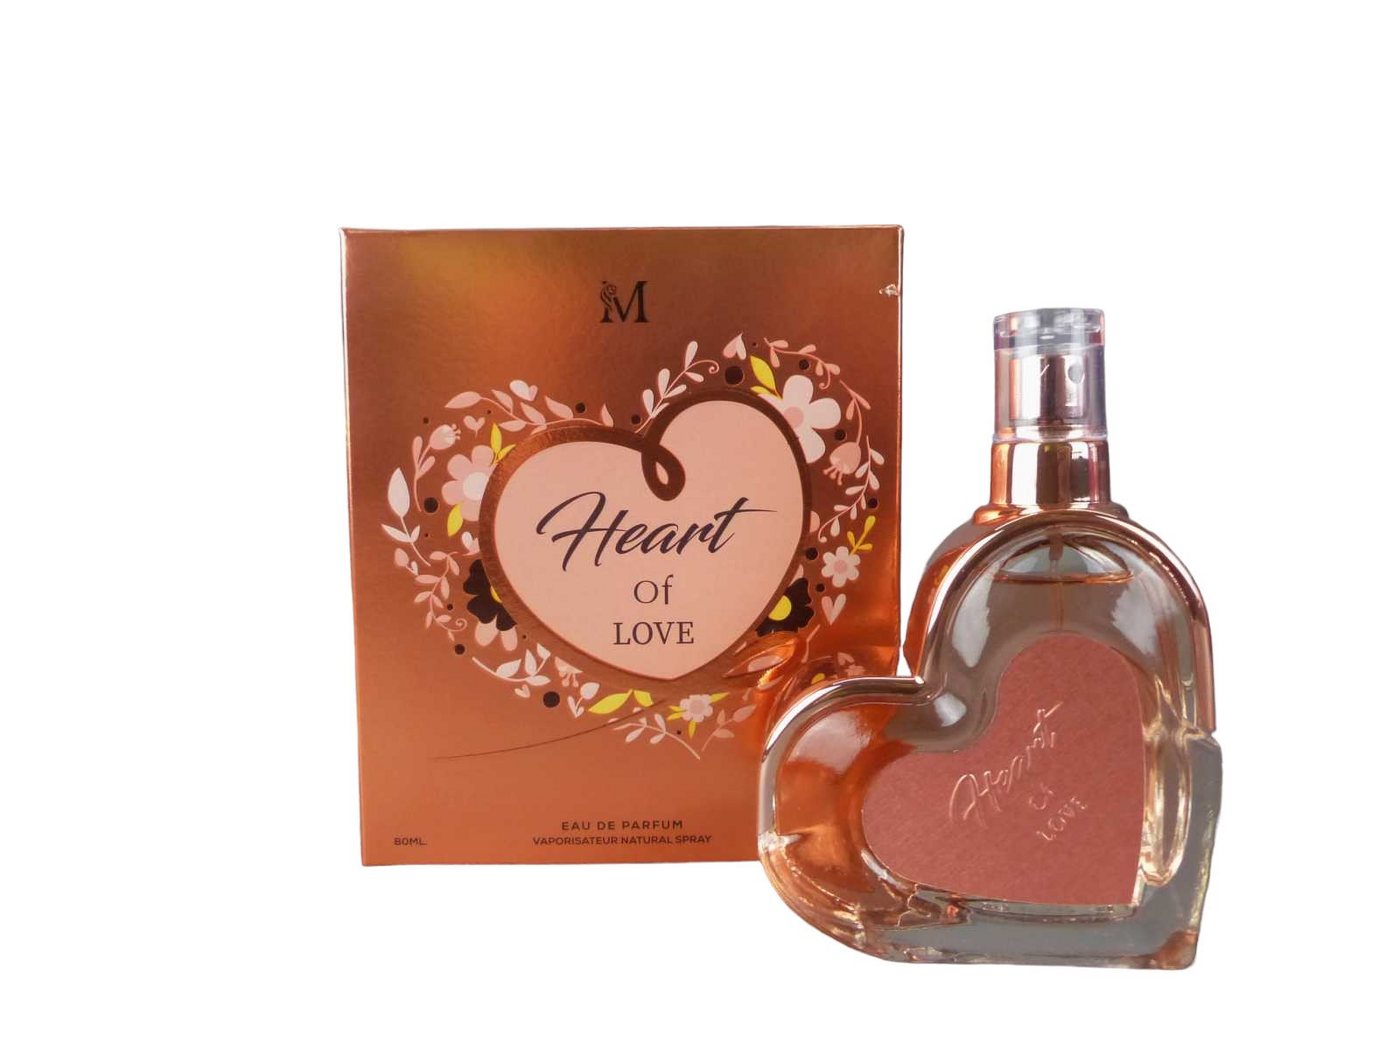 Montage Brands Eau de Parfum Heart of Love Damen Duft Parfüm edp eau de Parfum 80 ml Duftzwilling von Montage Brands